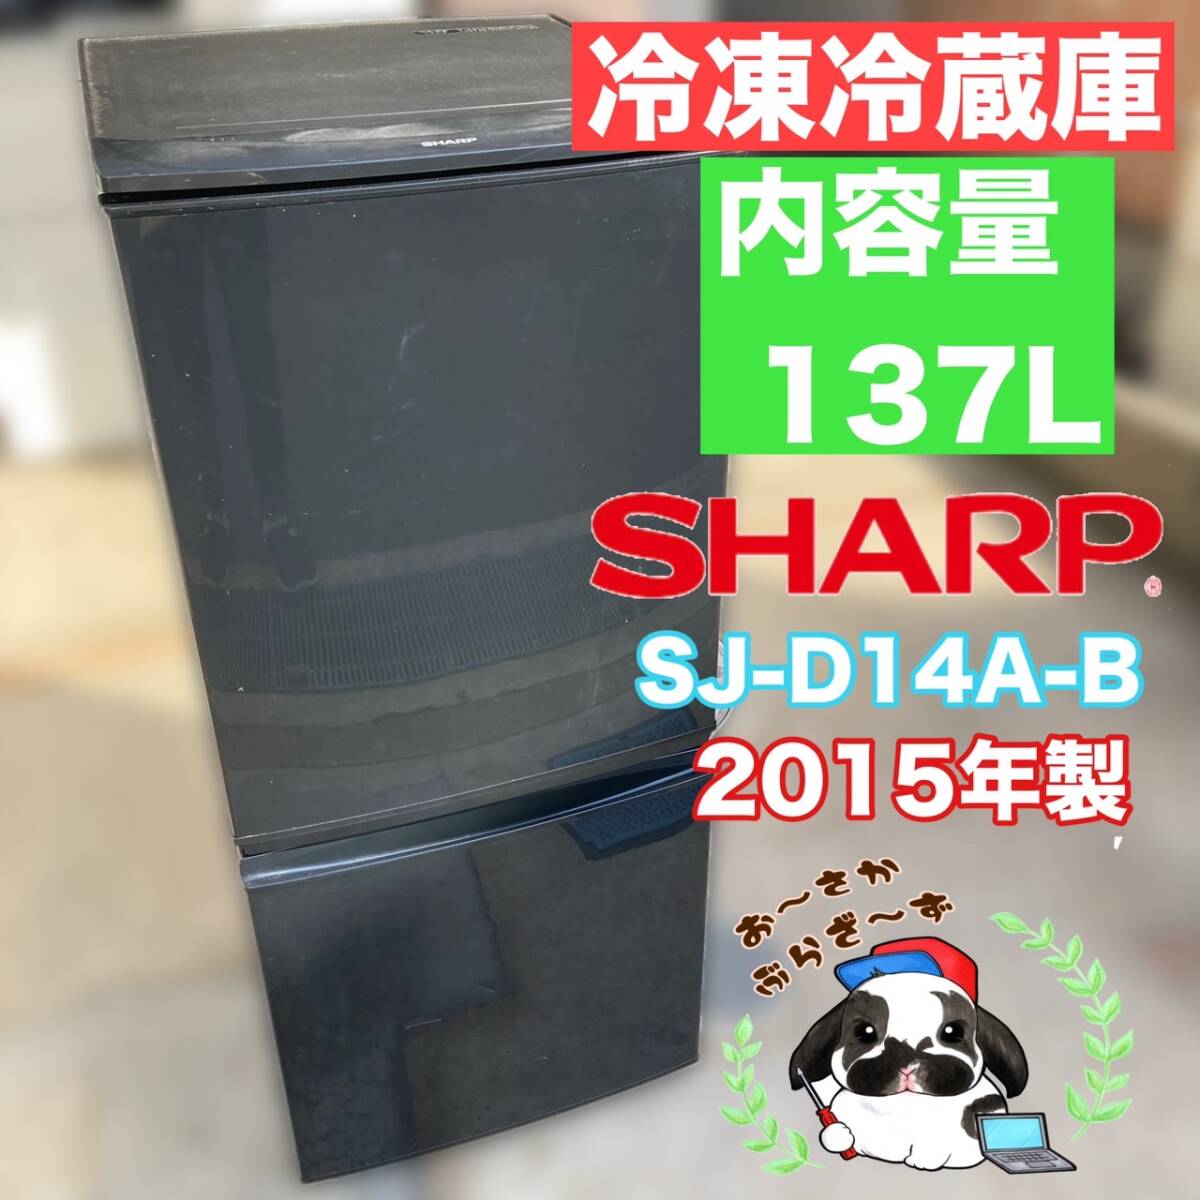 送料無料!!SHARP シャープ 137L 冷凍冷蔵庫 SJ-D14A-B 2ドア 動作品◇2015年製/YM031-18